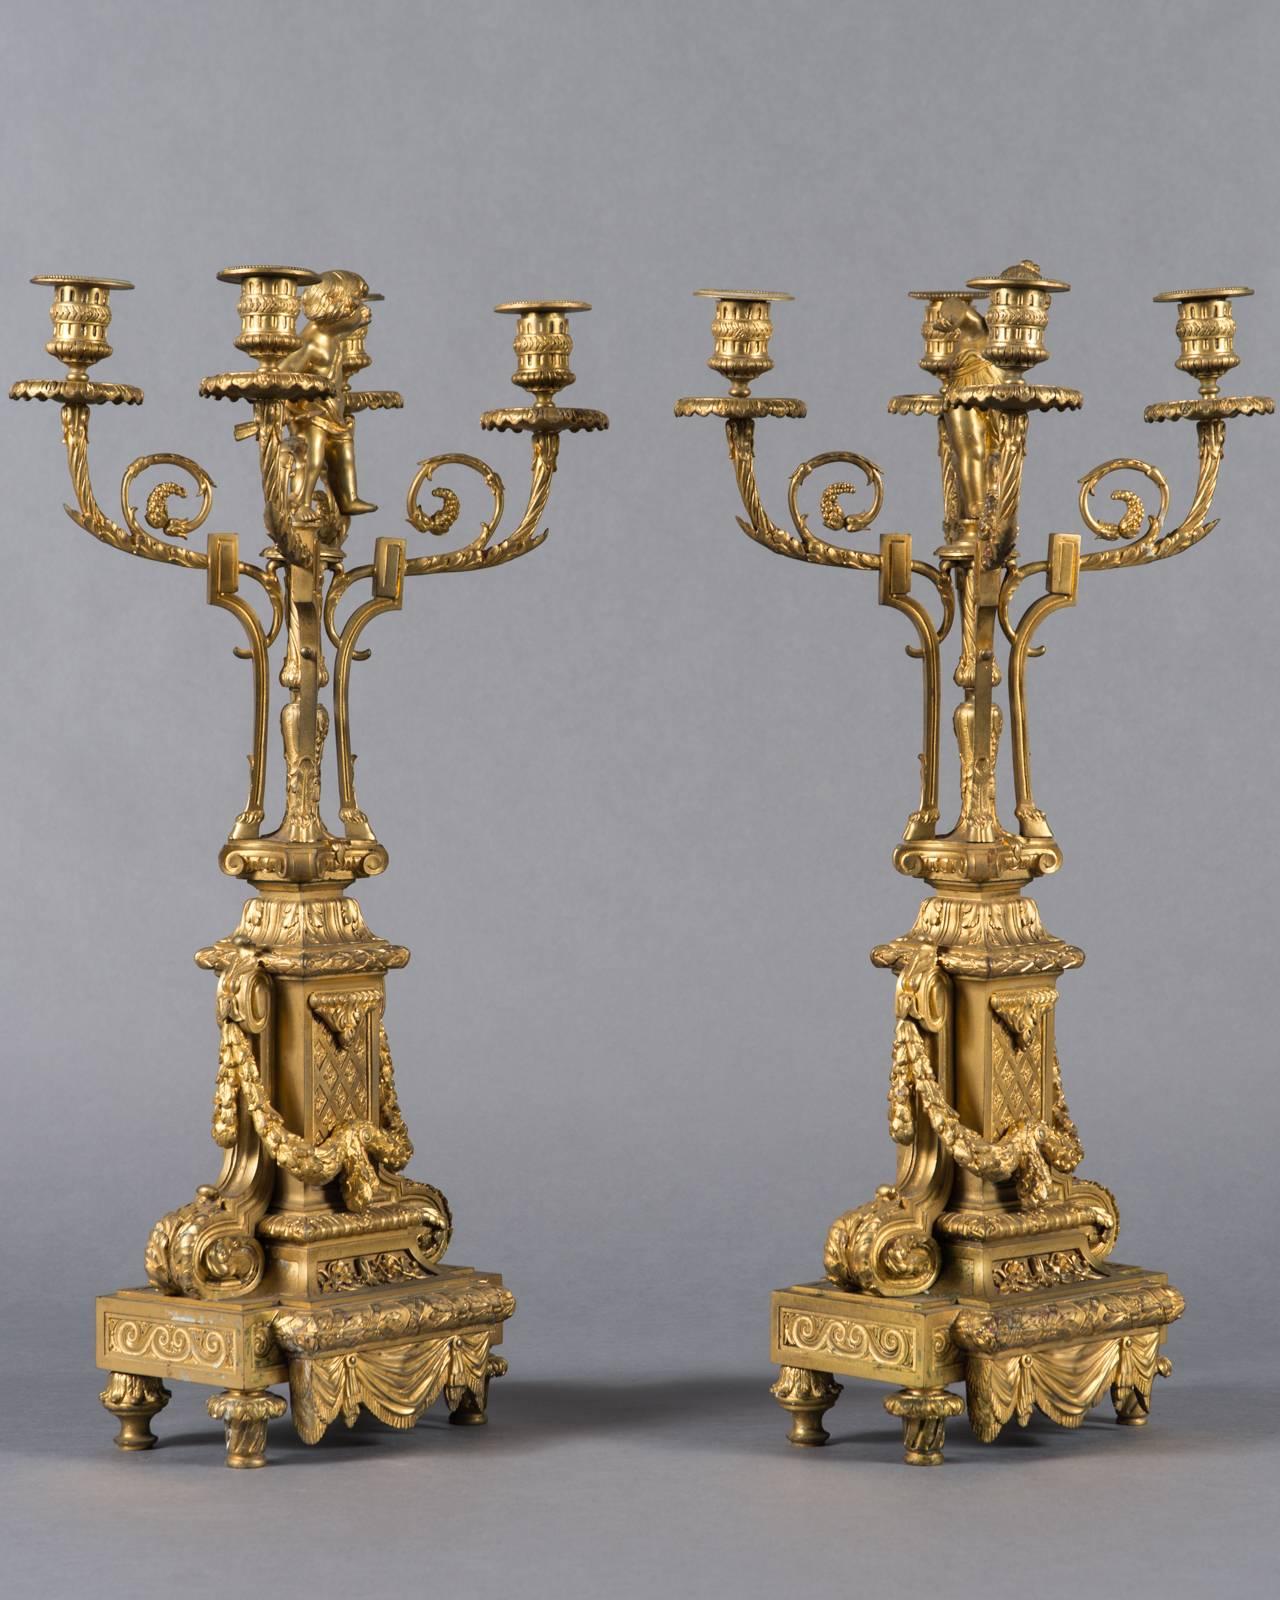 Ein Paar große Napoleon III Französisch vergoldete Bronze Vier-Zweig Figural Kandelaber des 19. Ein Kandelaber mit aufgesetzter Knabenfigur und der andere mit einer Mädchenfigur. 

Um: 1870

Abmessungen
Höhe: 61 cm (24